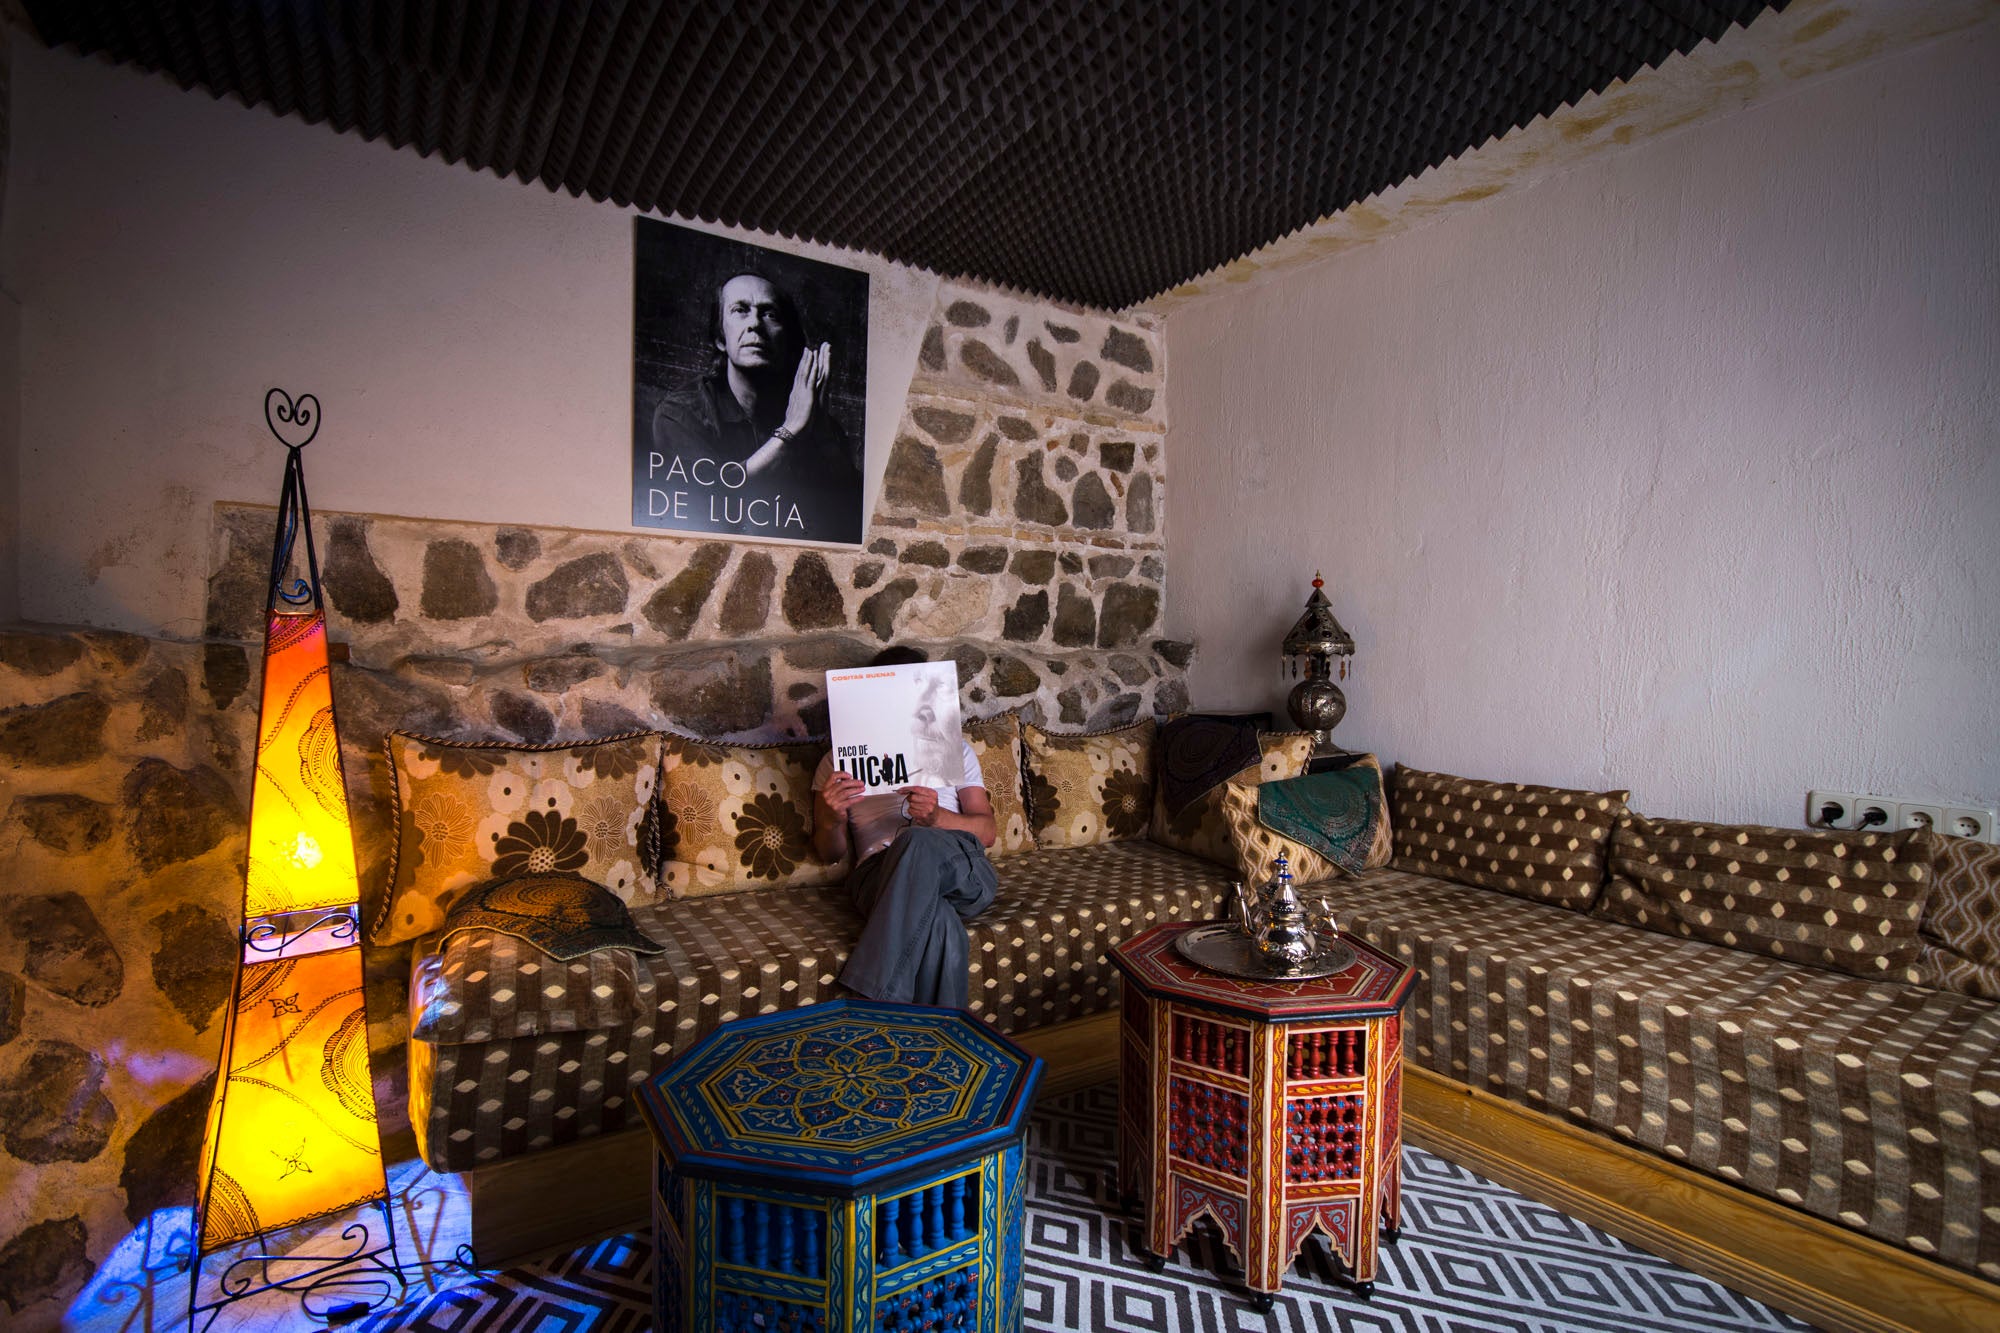 El lugar más especial del hotel es el estudio de grabación, donde Paco de Lucía grabó 'Cositas Buenas'.